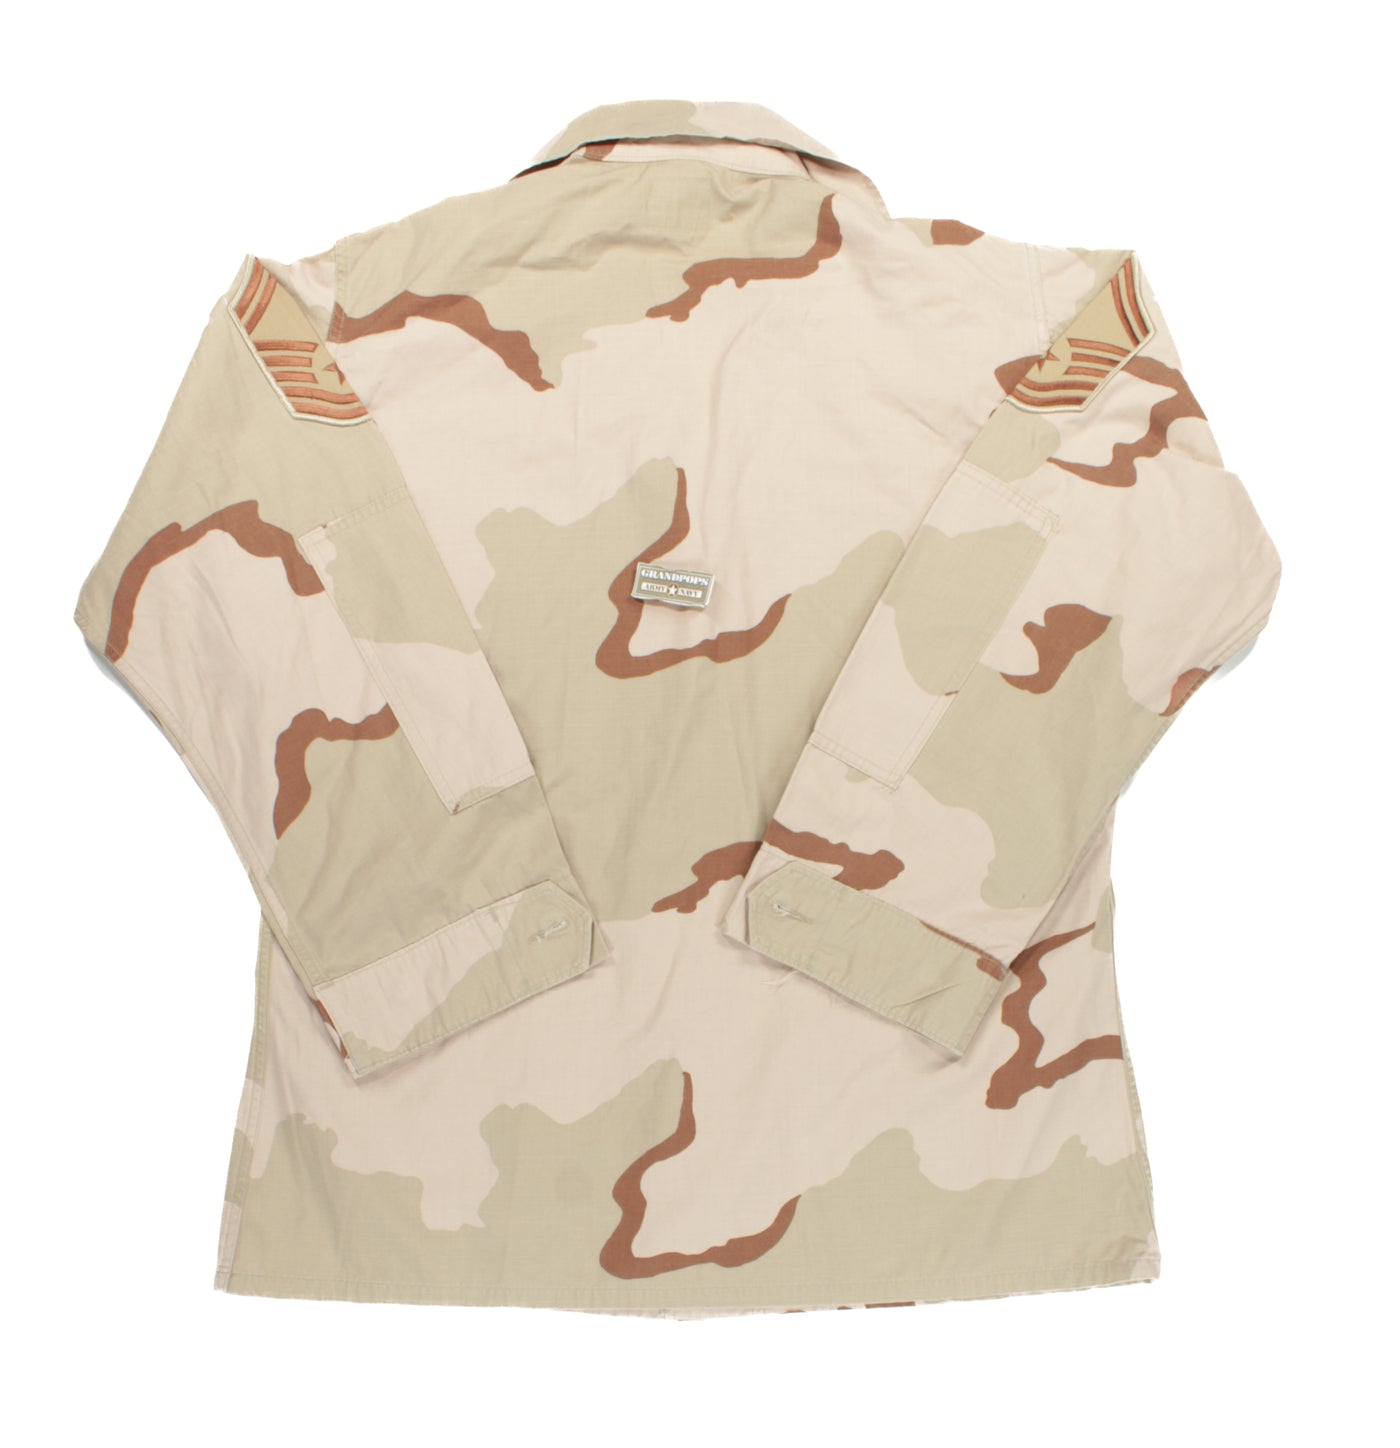 Military DCU Tri-Color Desert Camo Blouse Combat Uniform Shirt Jacket